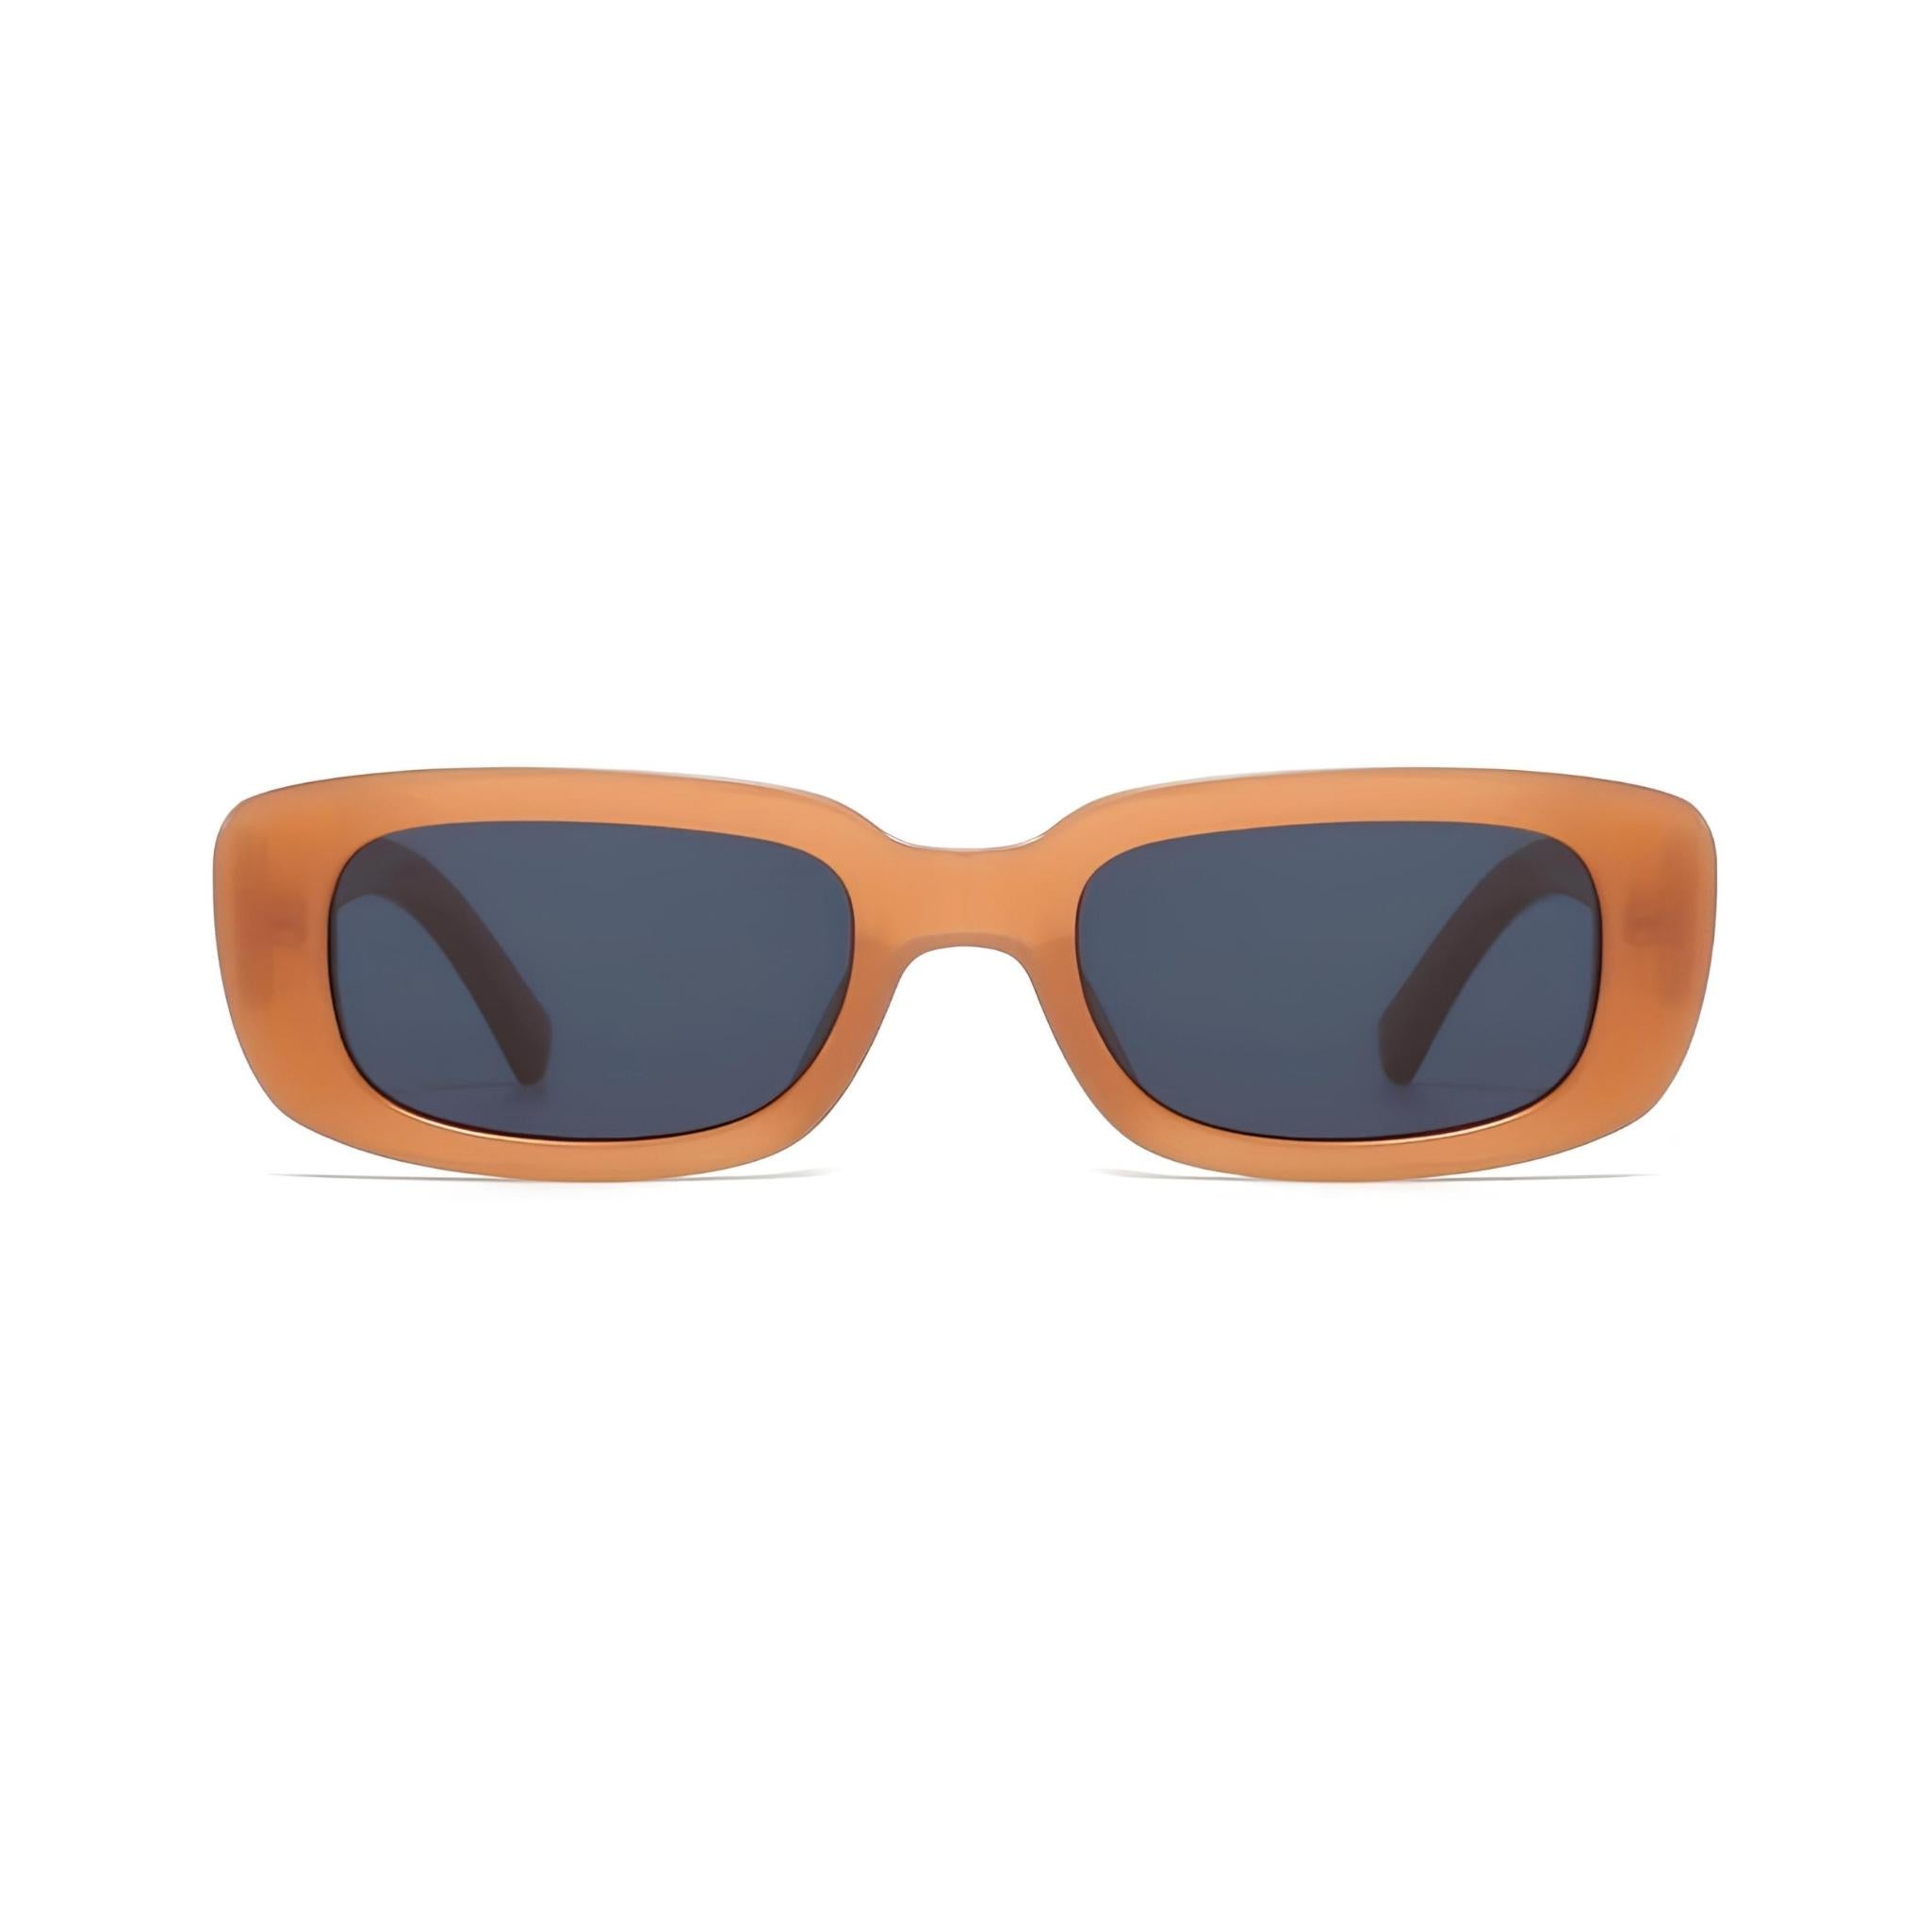 Rectro Series Retro Rectangular Sunglasses - Orange